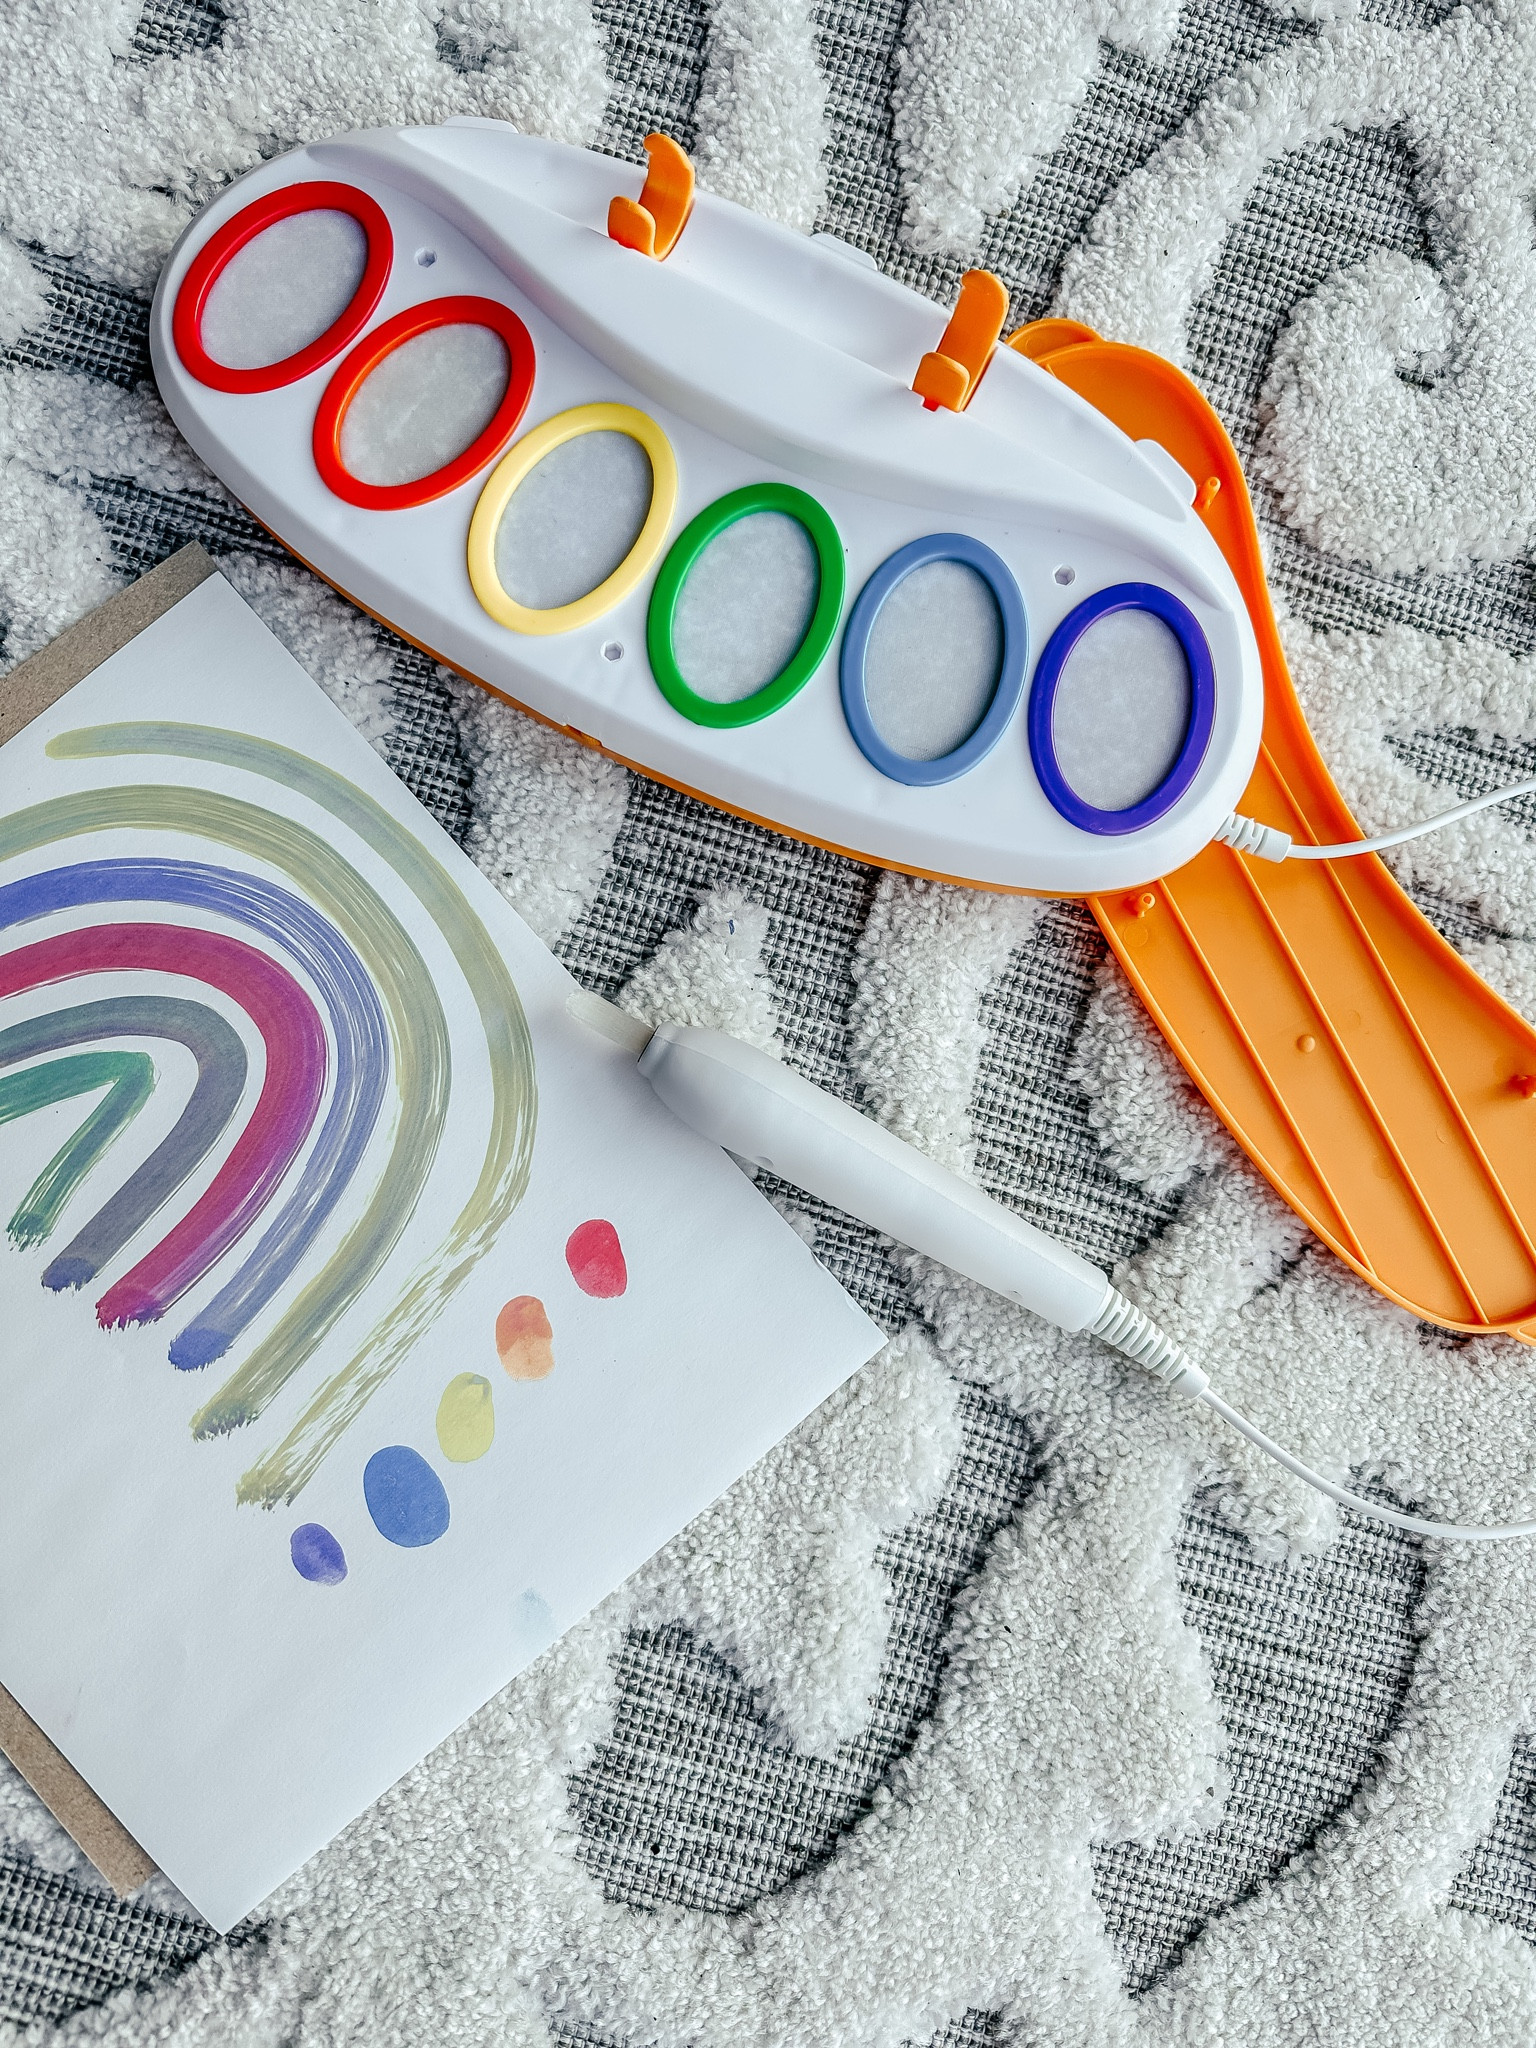 Crayola Color Wonder Prehistoric Pals Coloring Set, Art Kit for Kids, Toys,  Beginner Unisex Child 